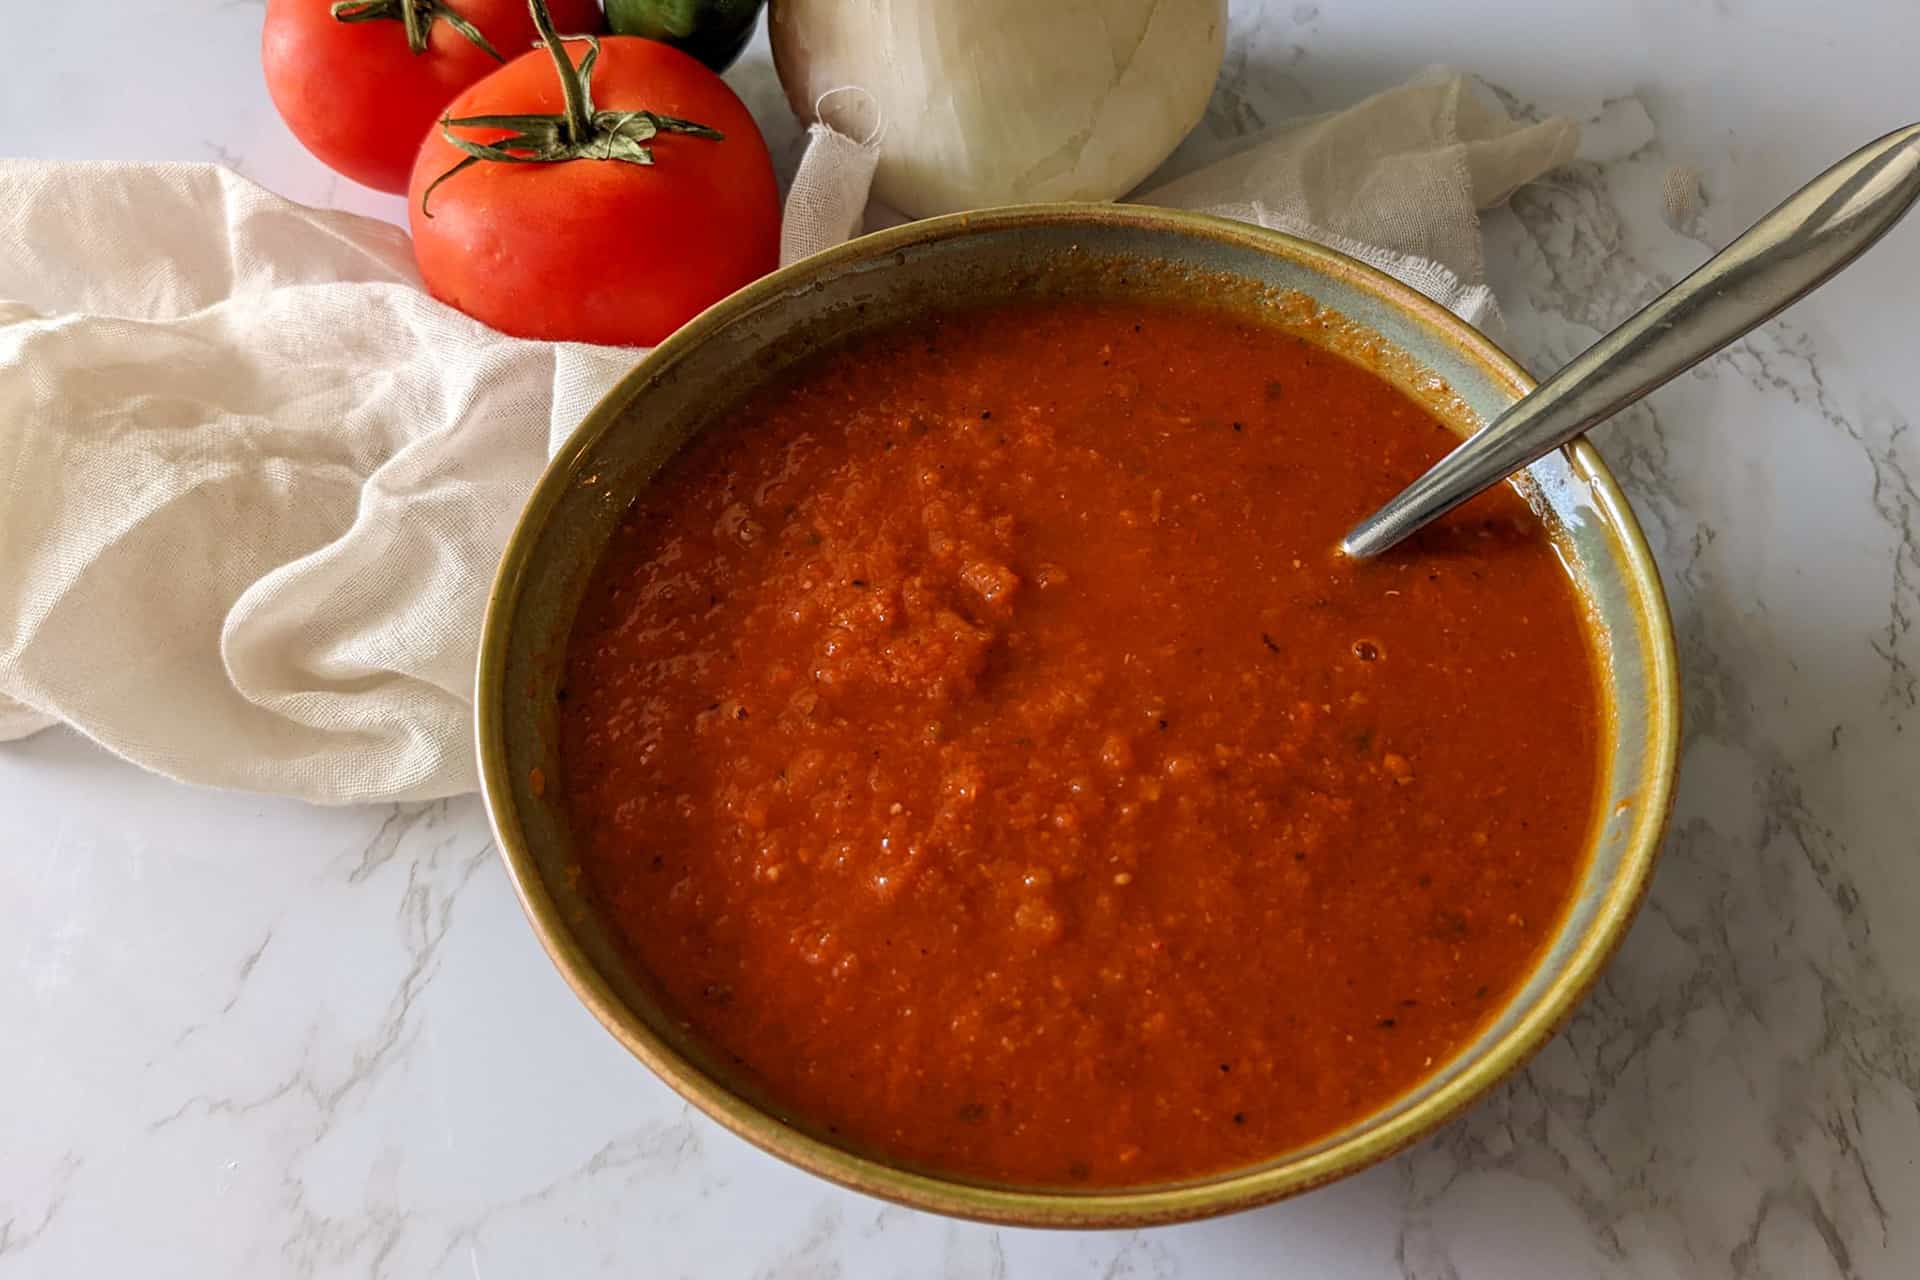 Ranchero sauce in a bowl